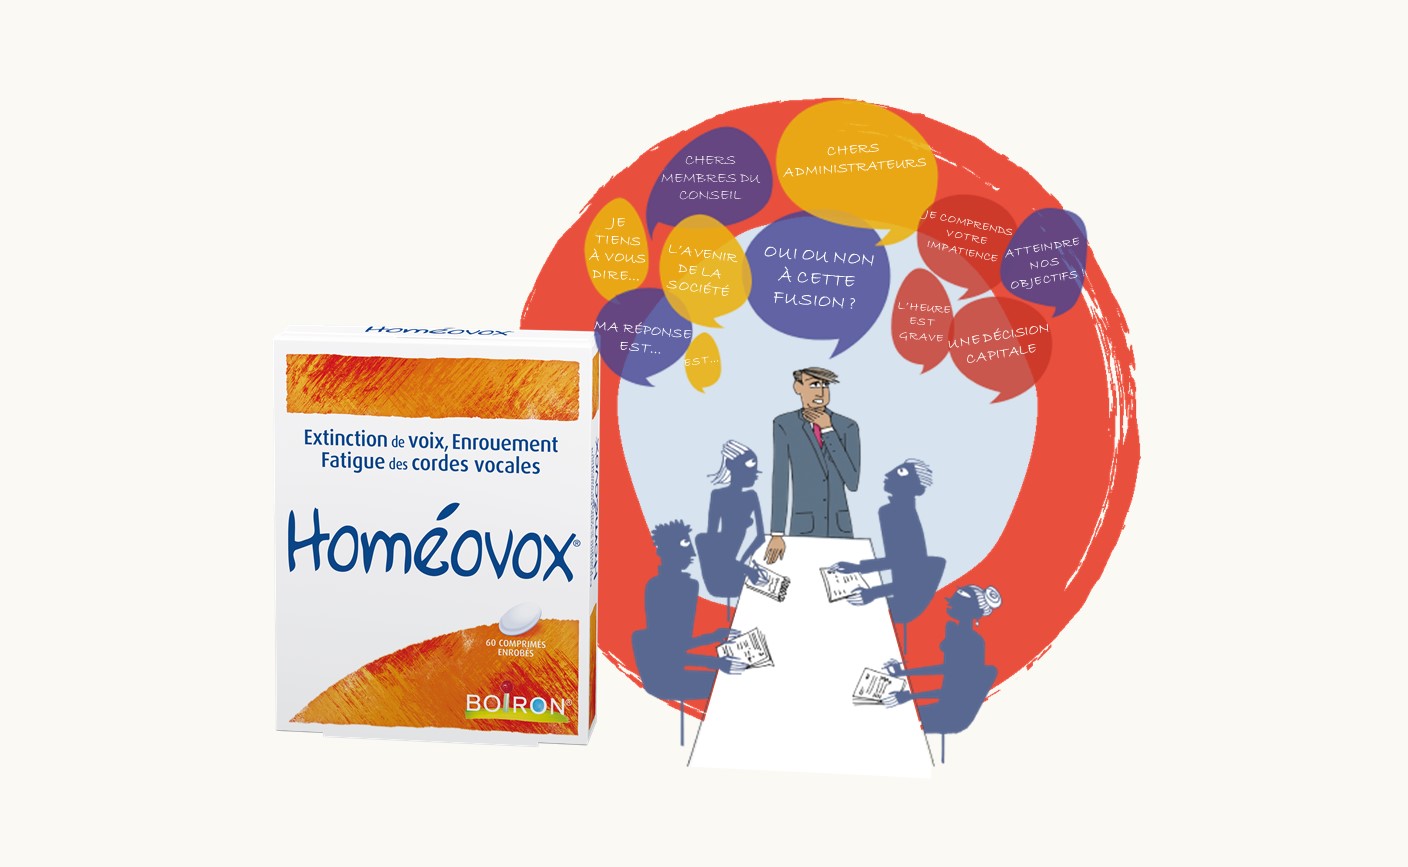 Homeovox 